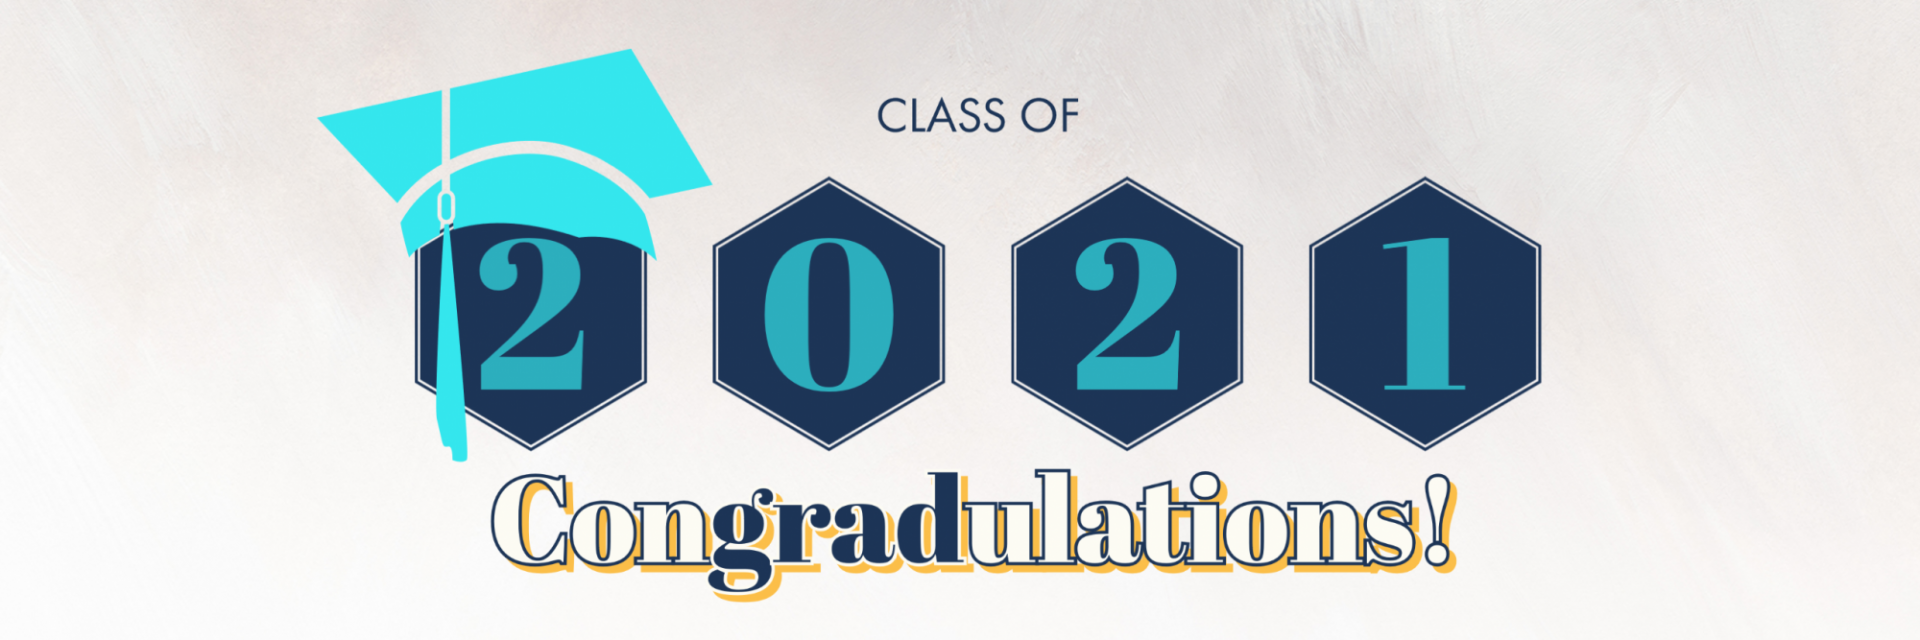 Grad congrats 